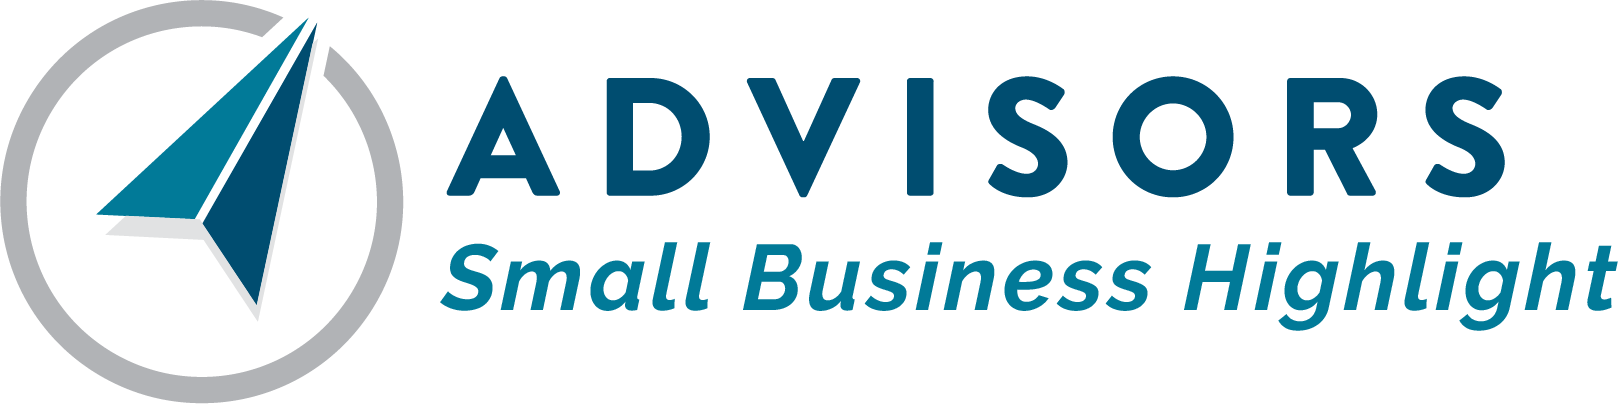 Advisors Insurance Agency Small Business Highlight blog